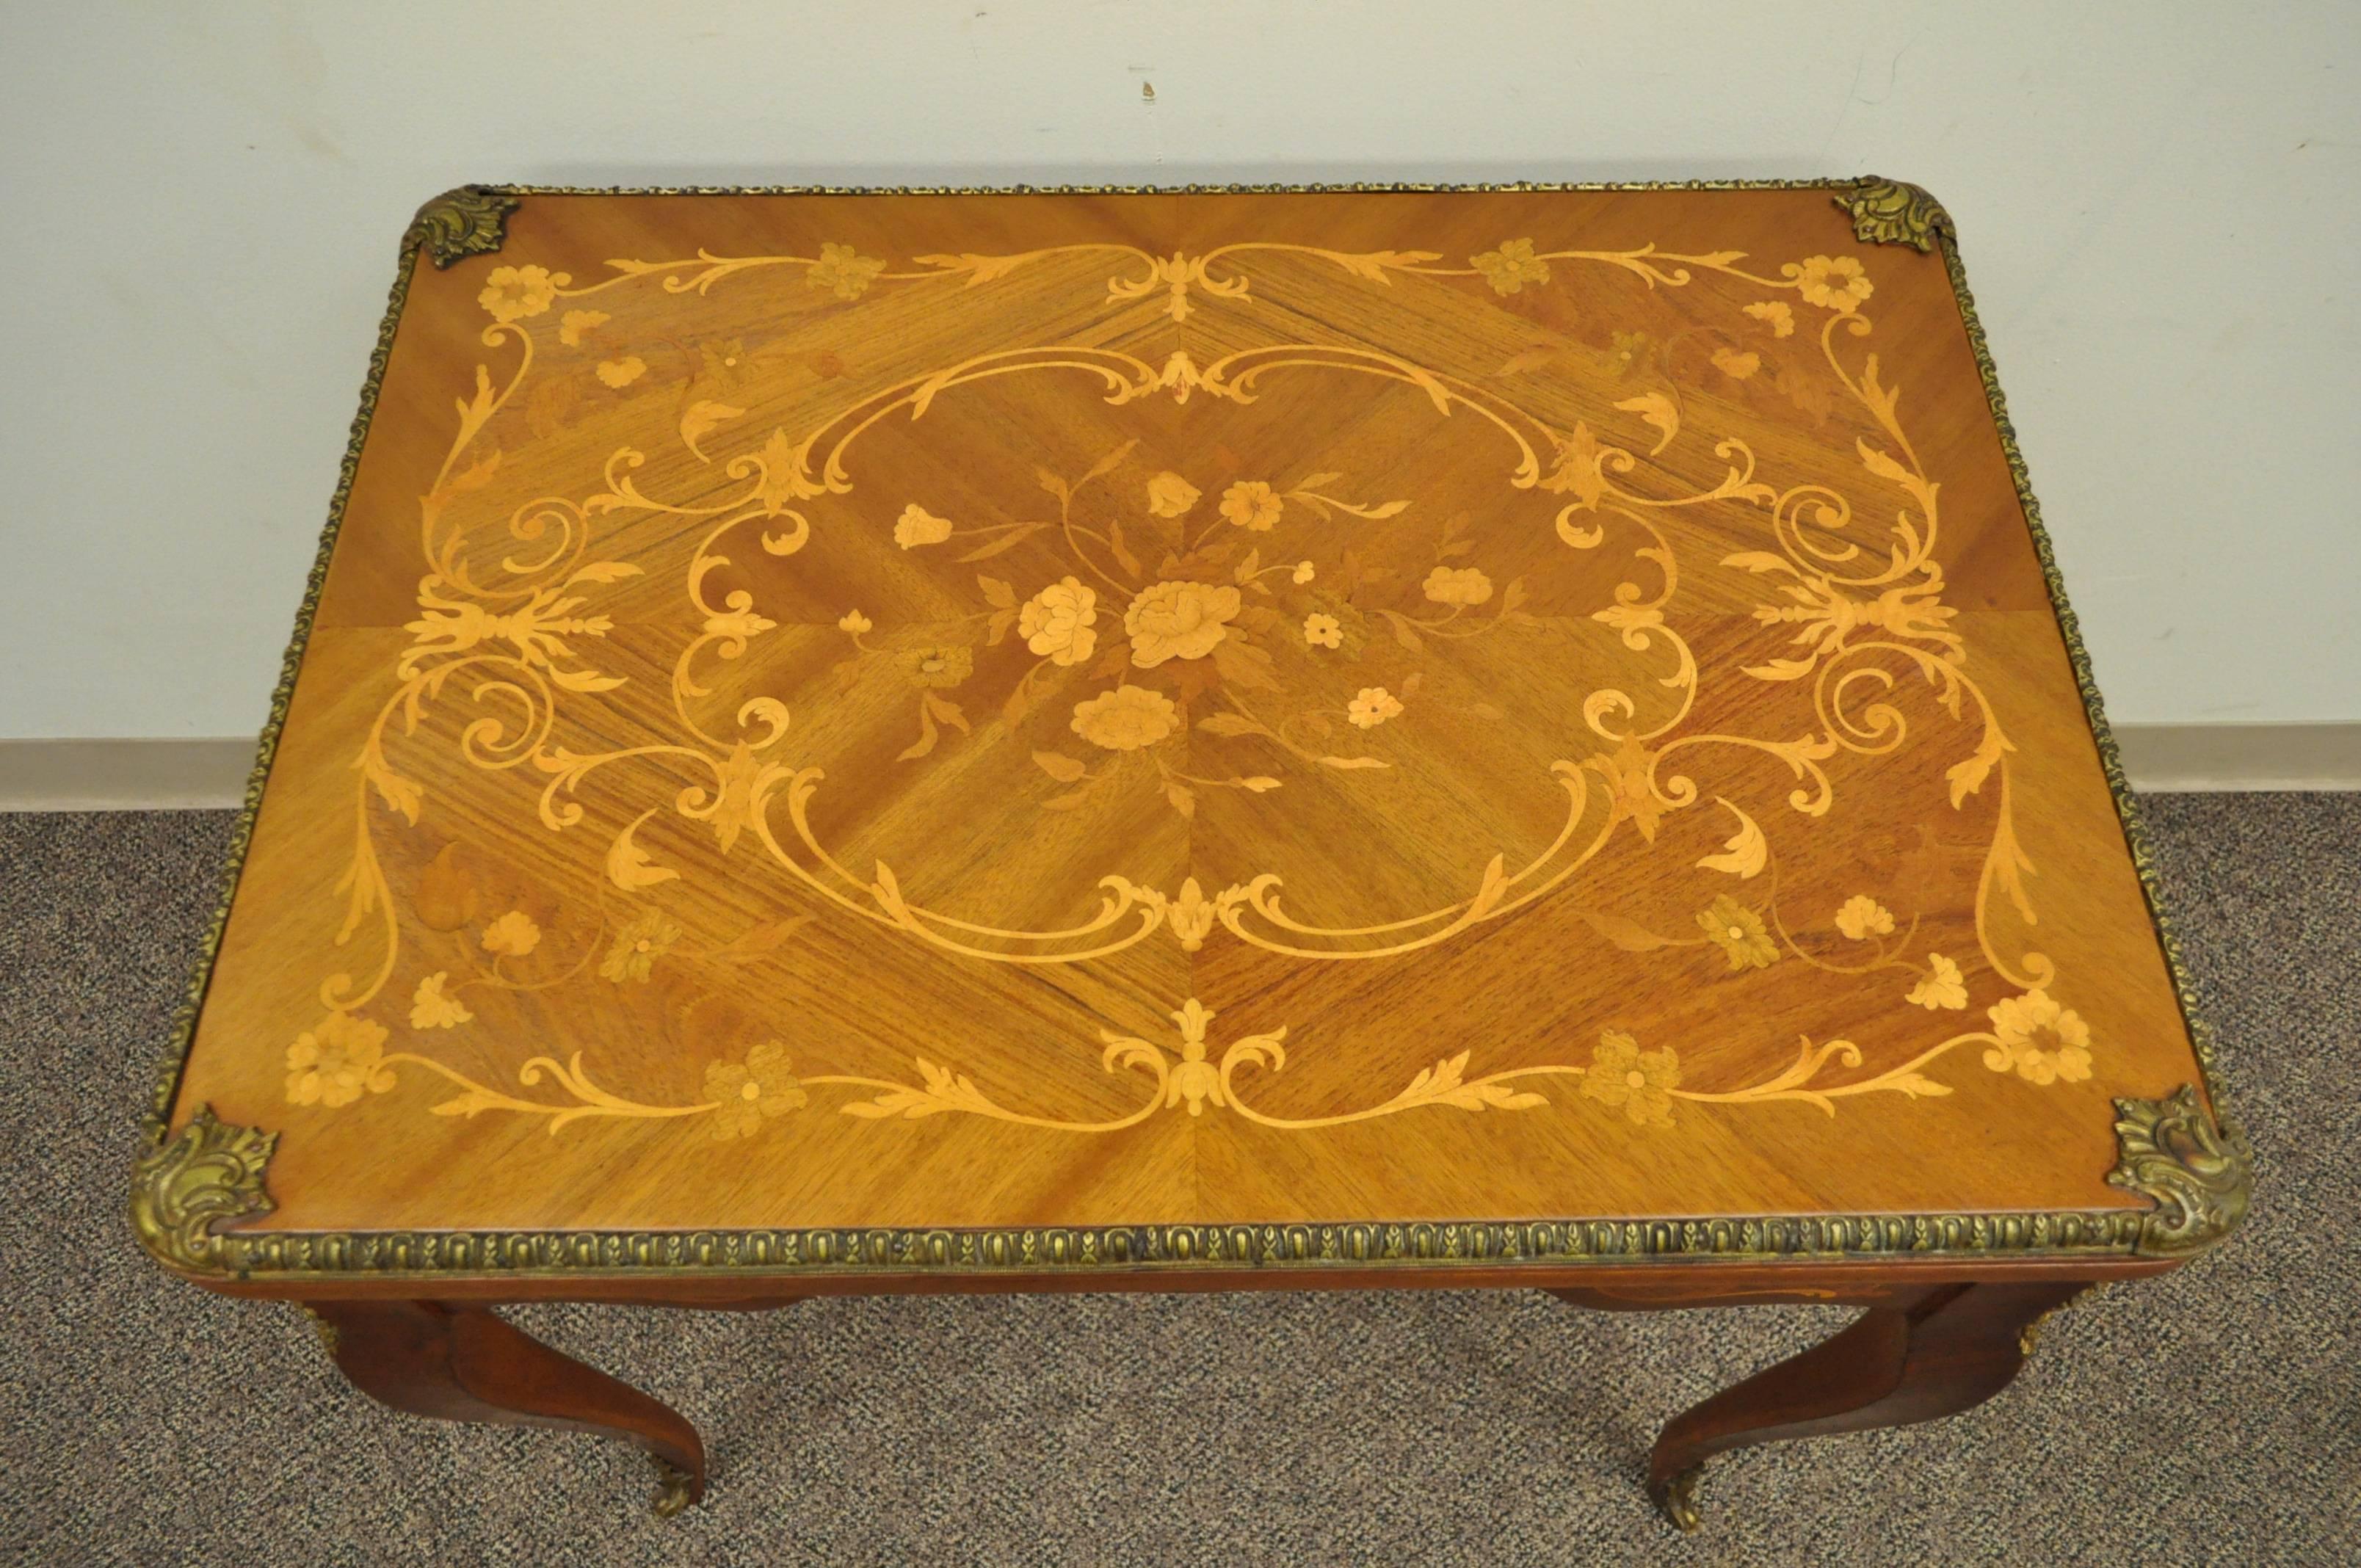 Eine schöne Französisch Louis XV-Stil Intarsien Flip-Top Spieltisch. Der Tisch hat ein wunderschönes florales Intarsienmuster auf der Platte und allen Seiten, gegossene Bronzebeschläge und eine einzelne Schublade mit Schwalbenschwanz.

Die